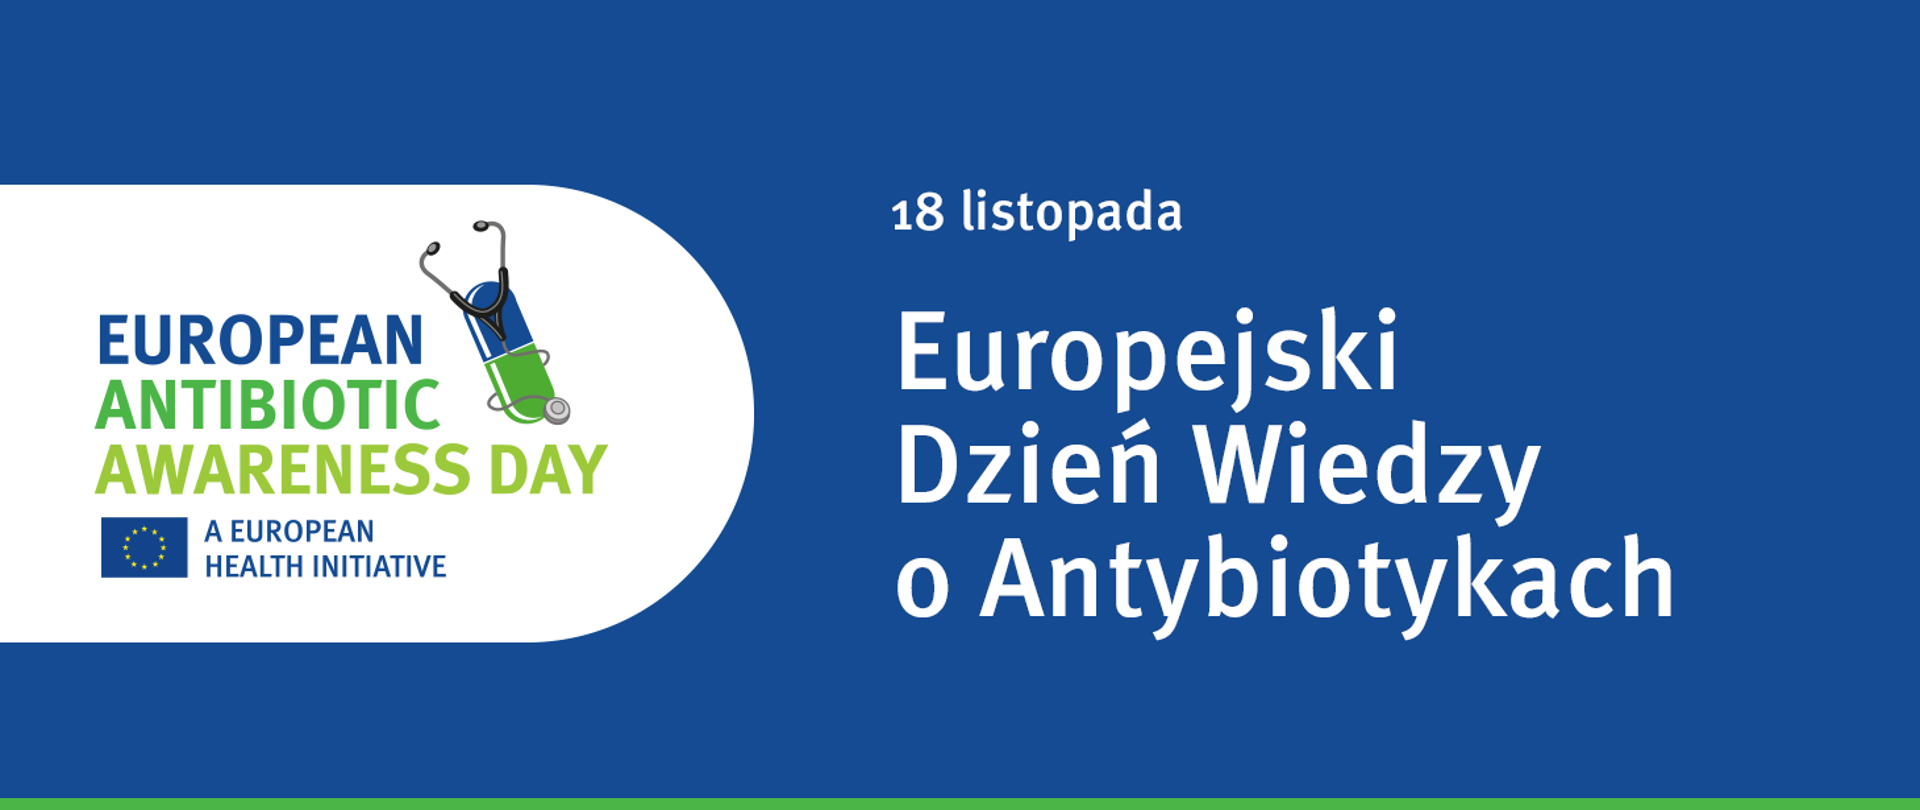 Grafika ilustracyjna: Europejski Tydzień Wiedzy o Antybiotykach